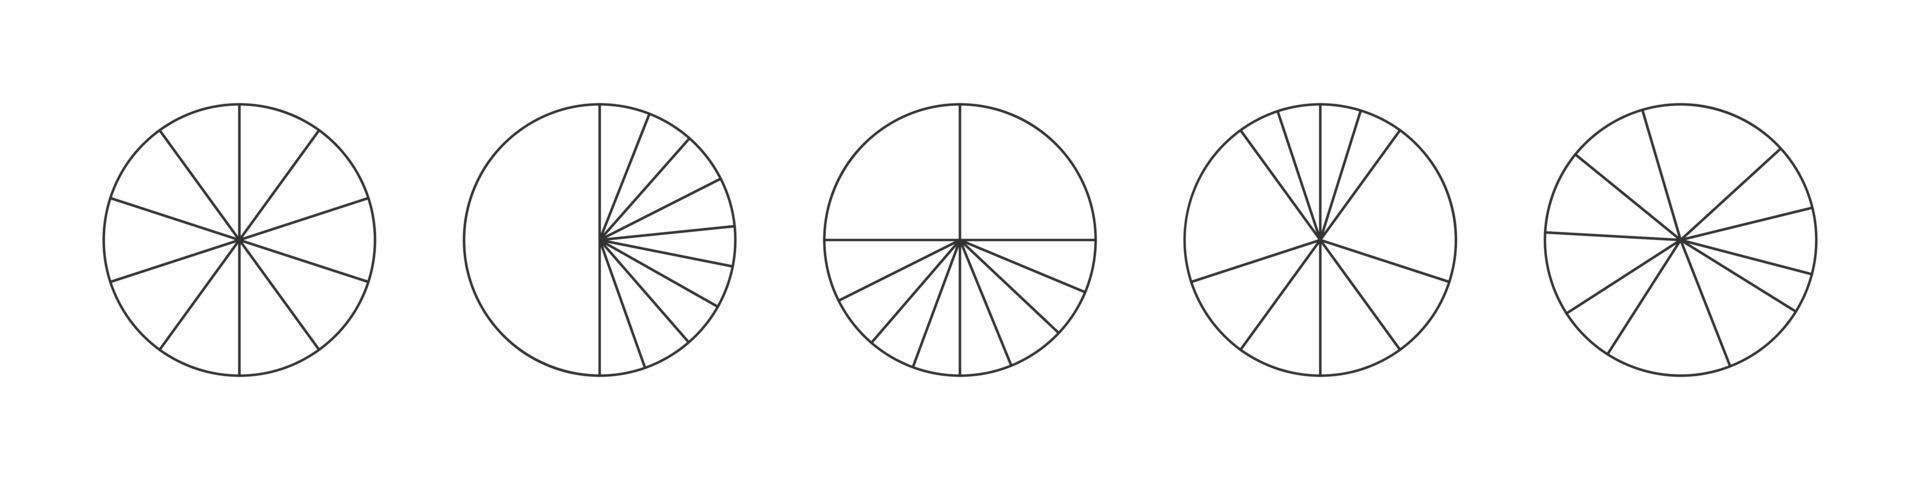 círculos de contorno divididos em 10 segmentos. formas redondas de torta ou pizza cortadas em dez fatias diferentes. exemplos de infográficos estatísticos simples vetor